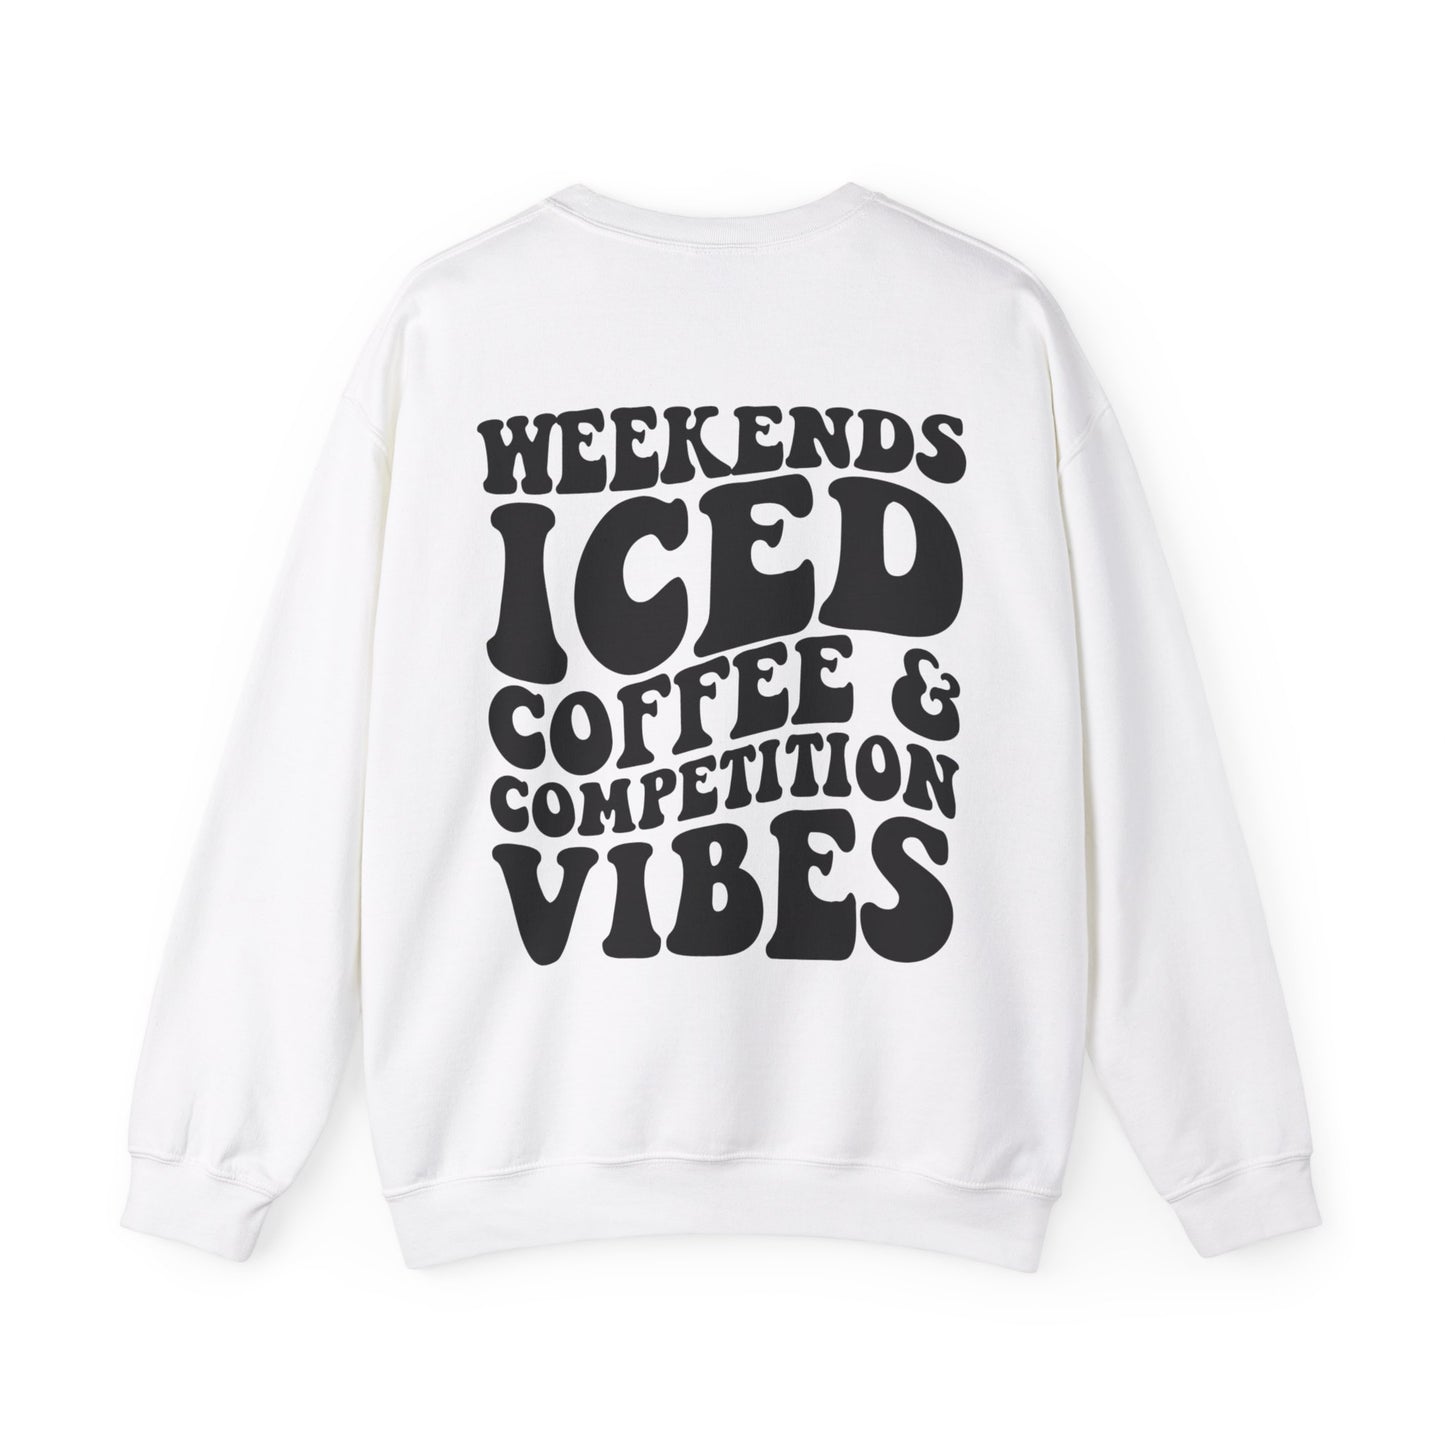 Weekends Ice Coffee Comp Vibes - Crewneck Sweatshirt